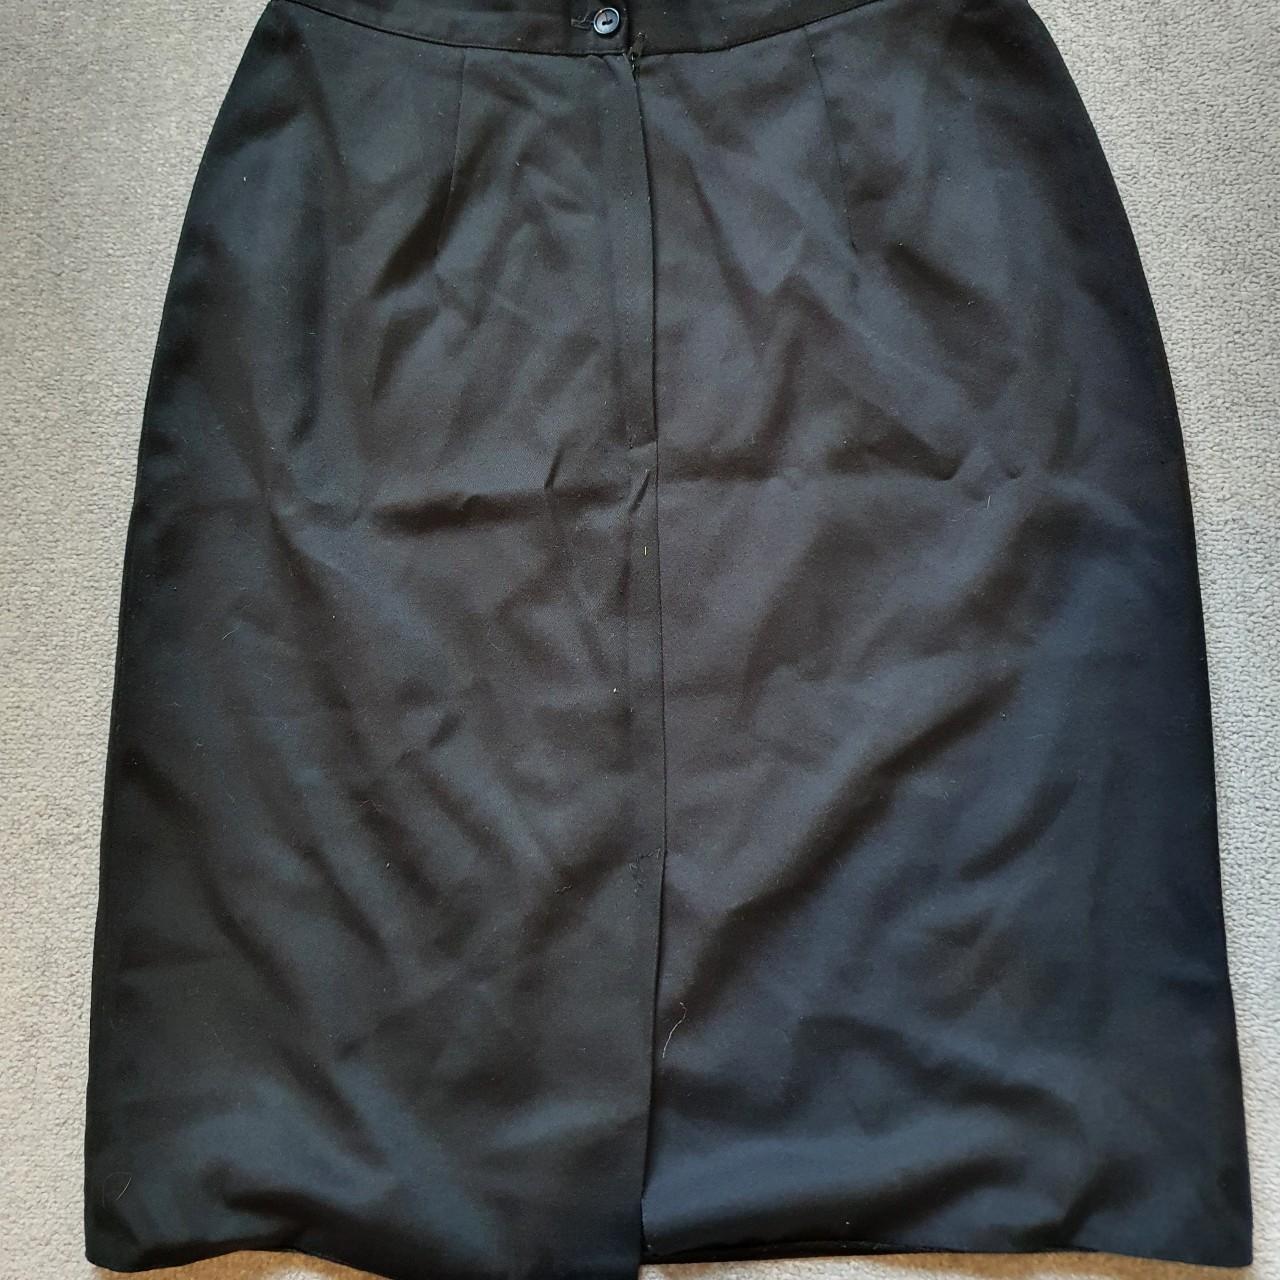 Vintage Dorothy Perkins Black Skirt - Size... - Depop